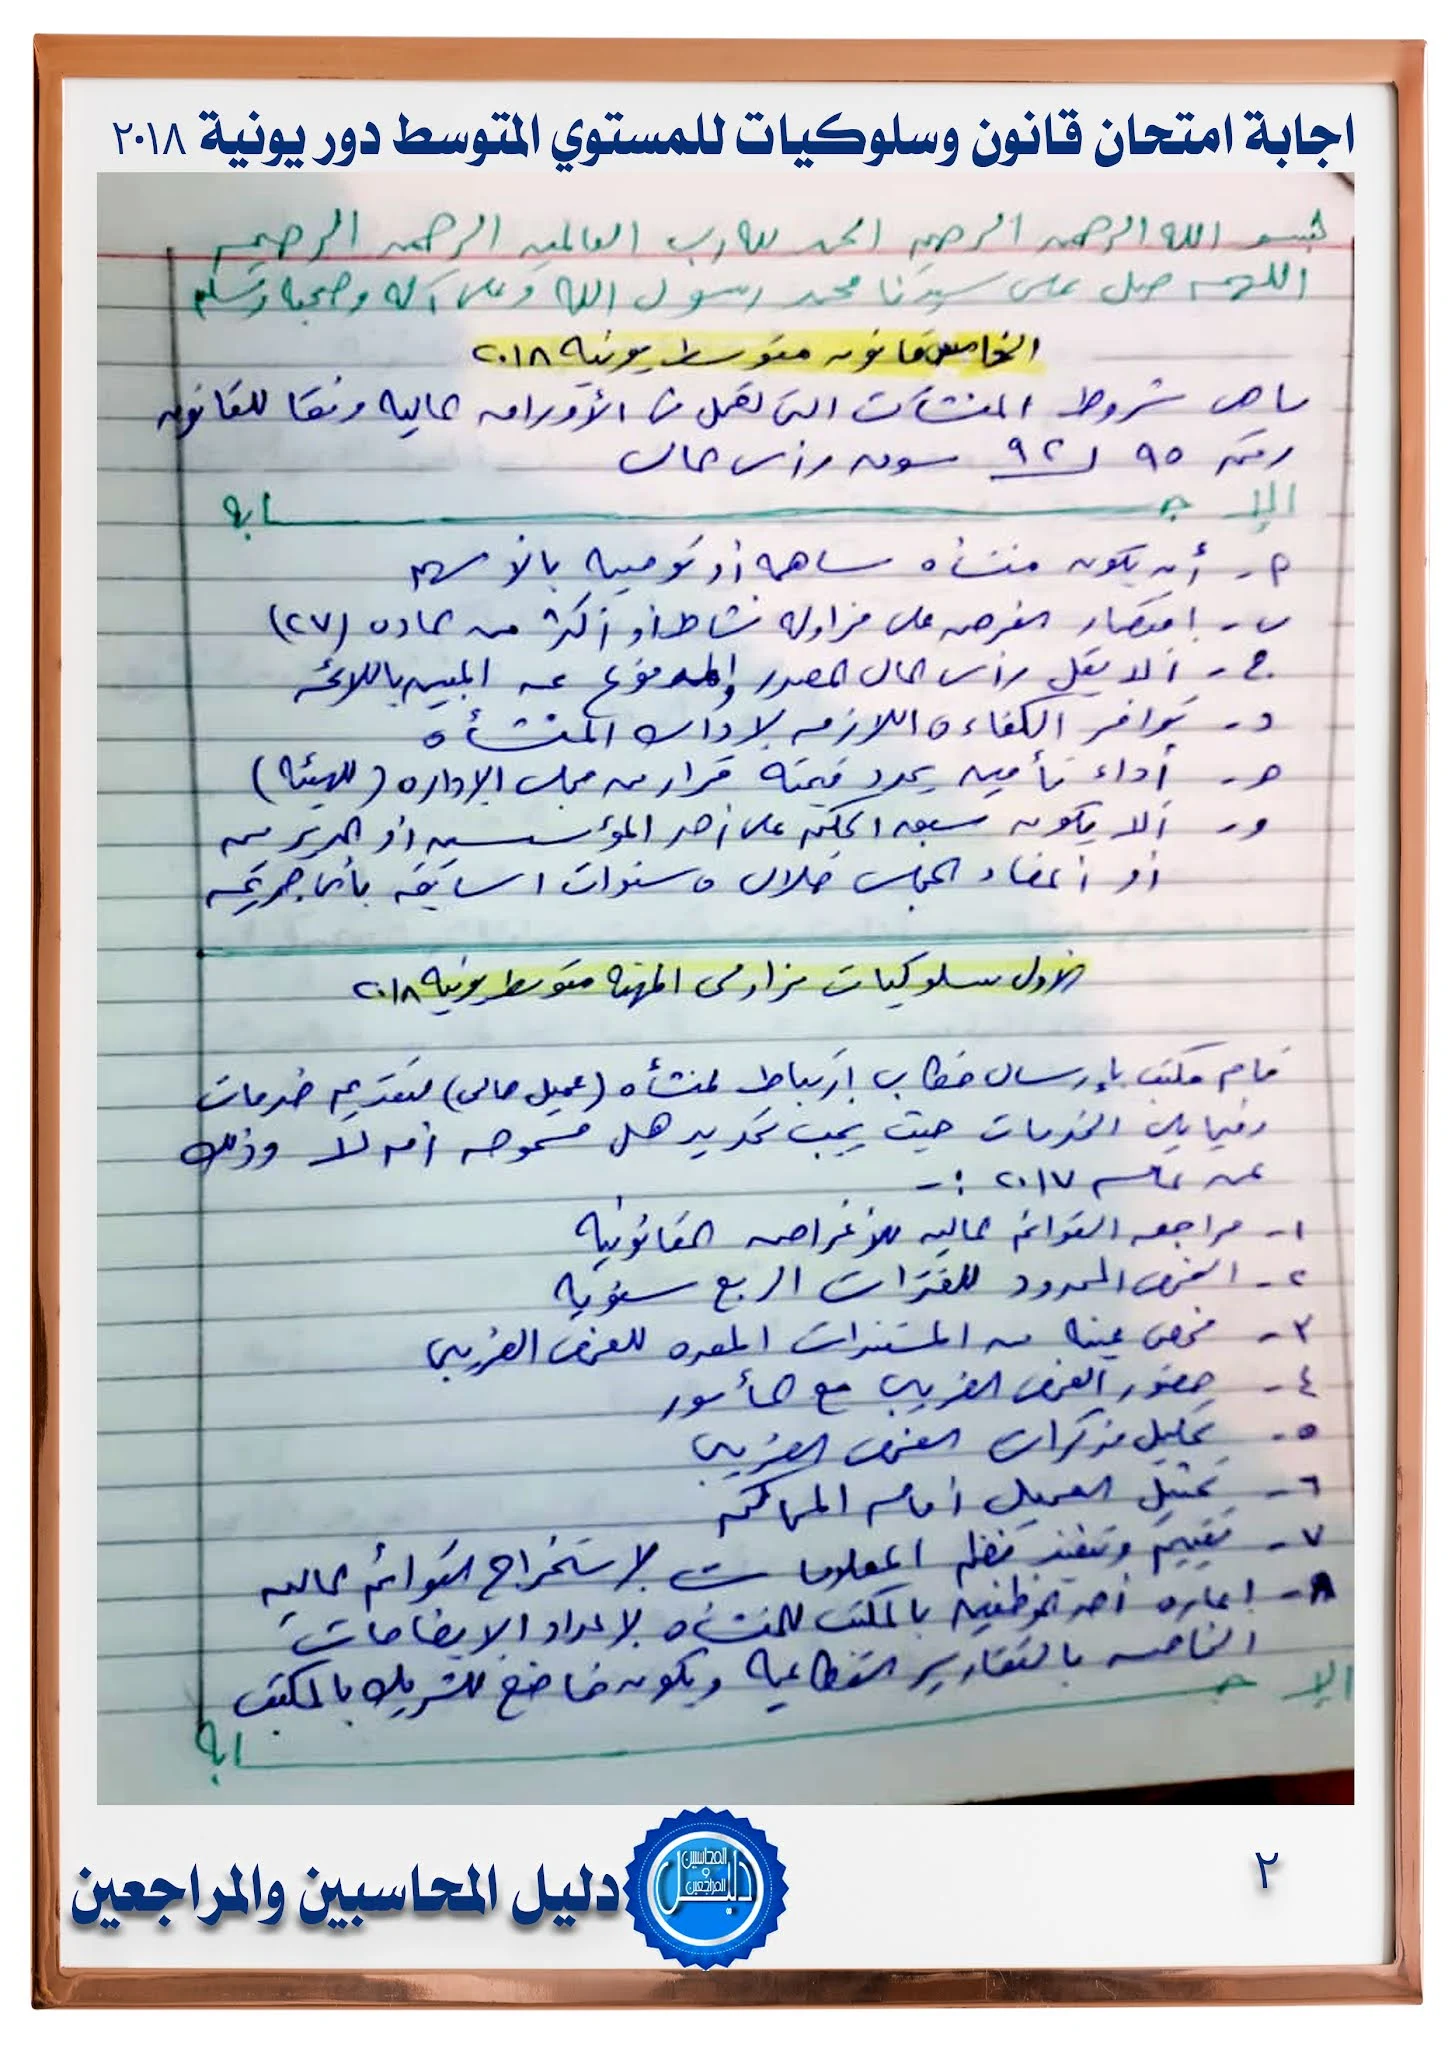 اجابة امتحان قانون وسلوكيات للمستوي المتوسط  يونيو 2018 جمعية المحاسبين والمراجعين المصرية